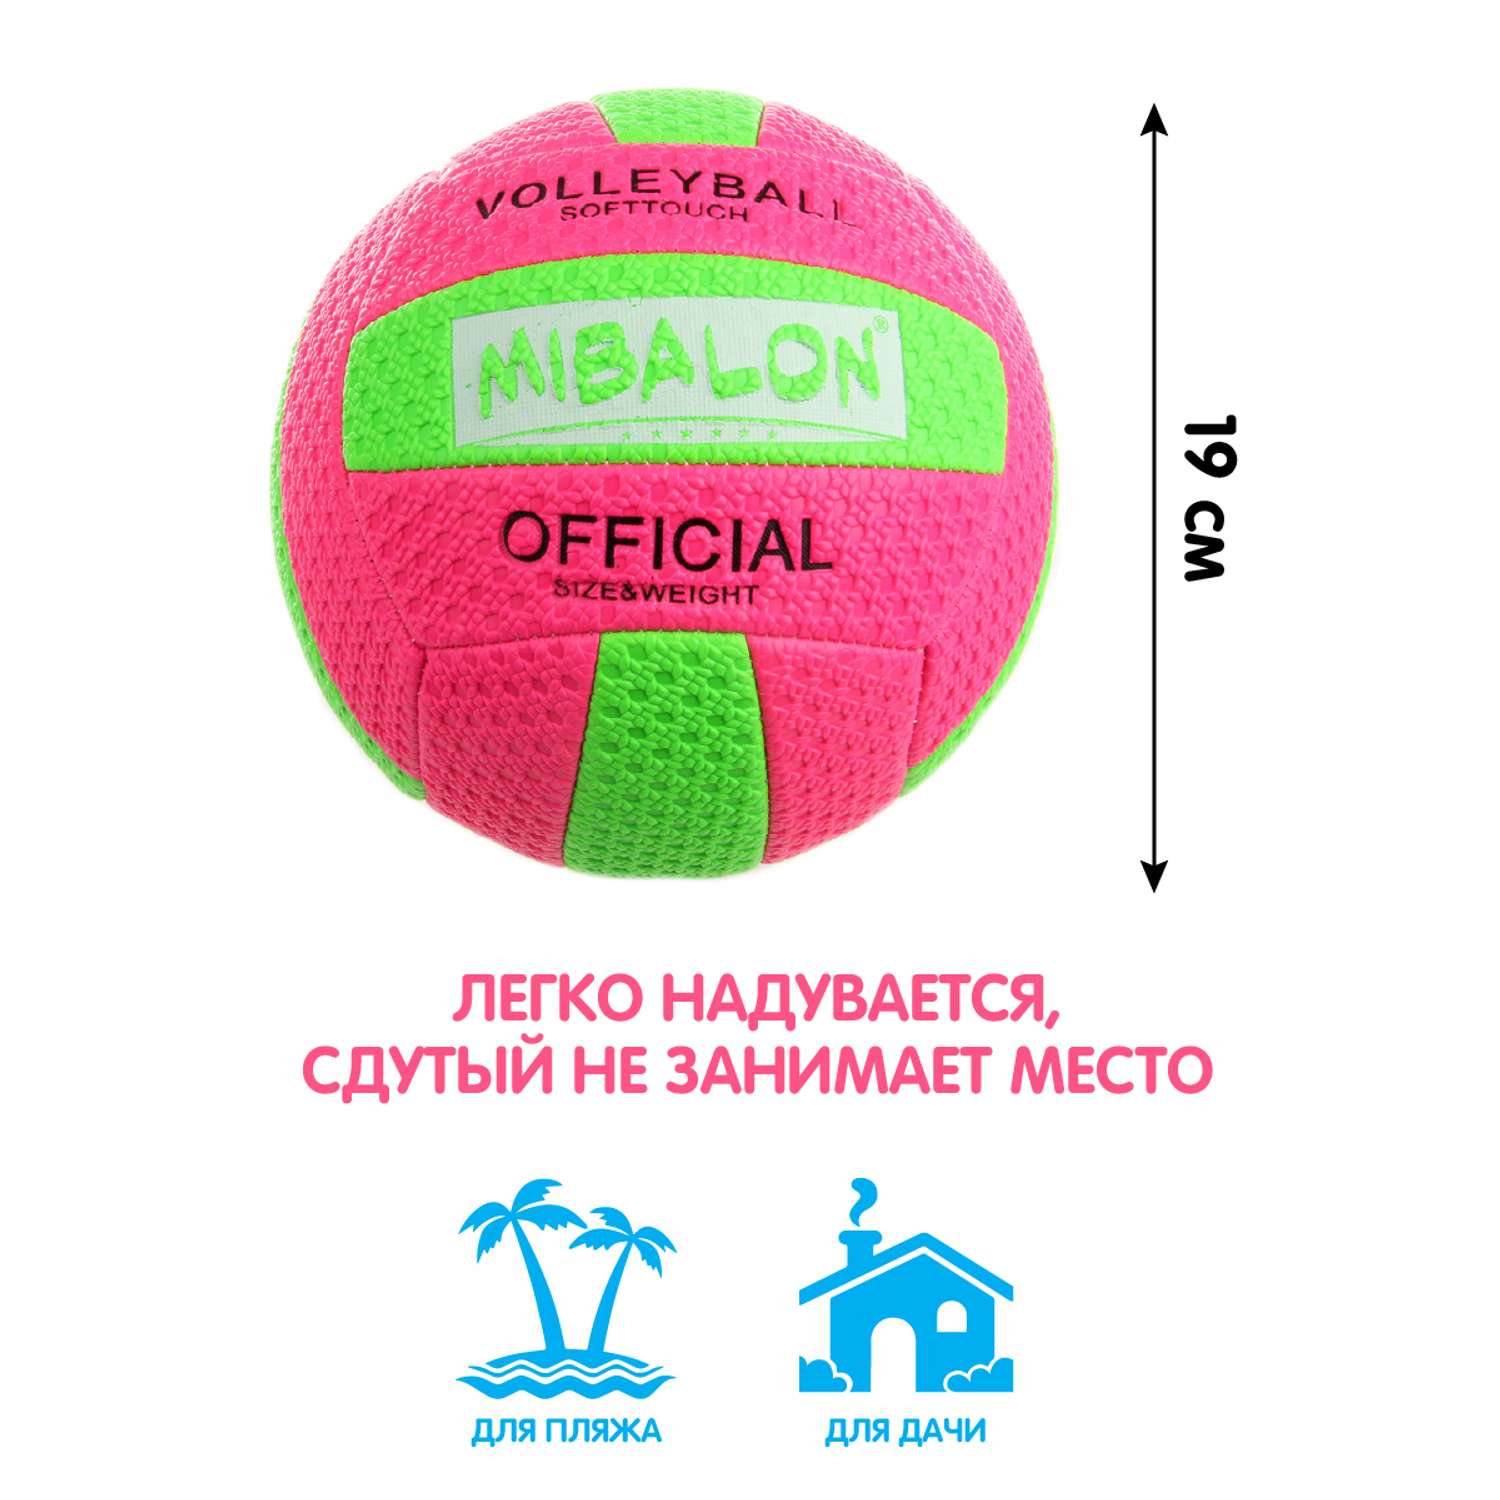 Мяч Veld Co волейбольный 19см - фото 2